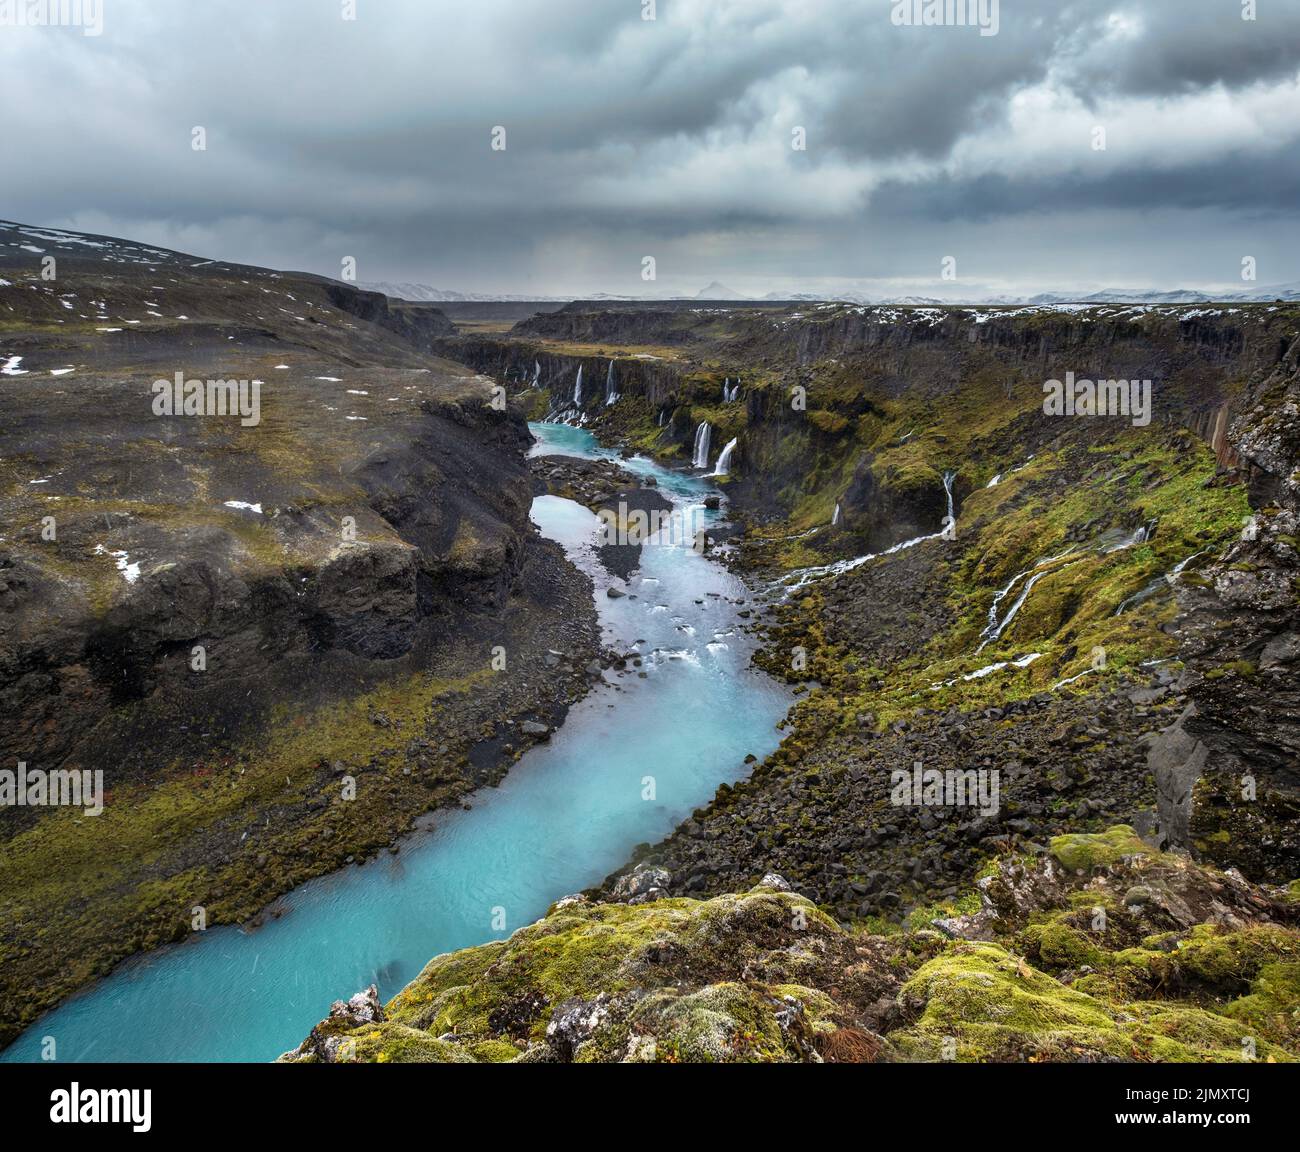 Chute de neige en automne sur la pittoresque cascade Sigoldugljufur vue. La saison change dans les Highlands du sud de l'Islande. Banque D'Images